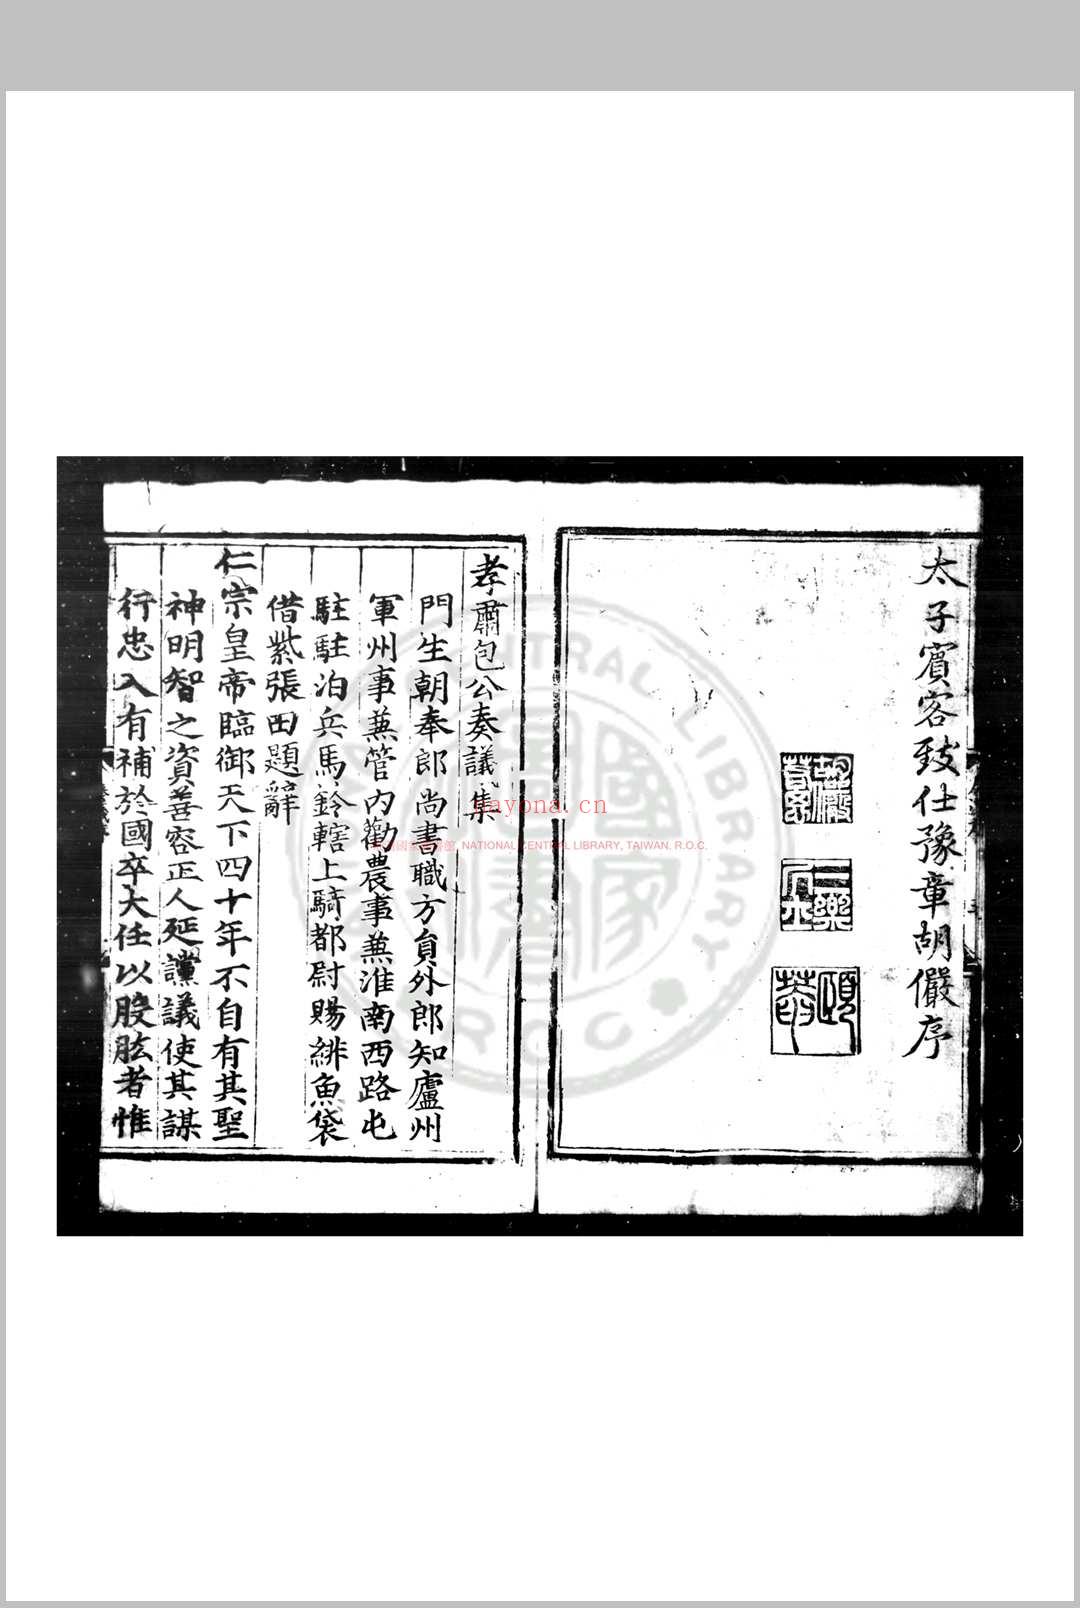 包孝肃公奏议集 (宋)包拯撰 明正统元年(1436)合肥方正刊本